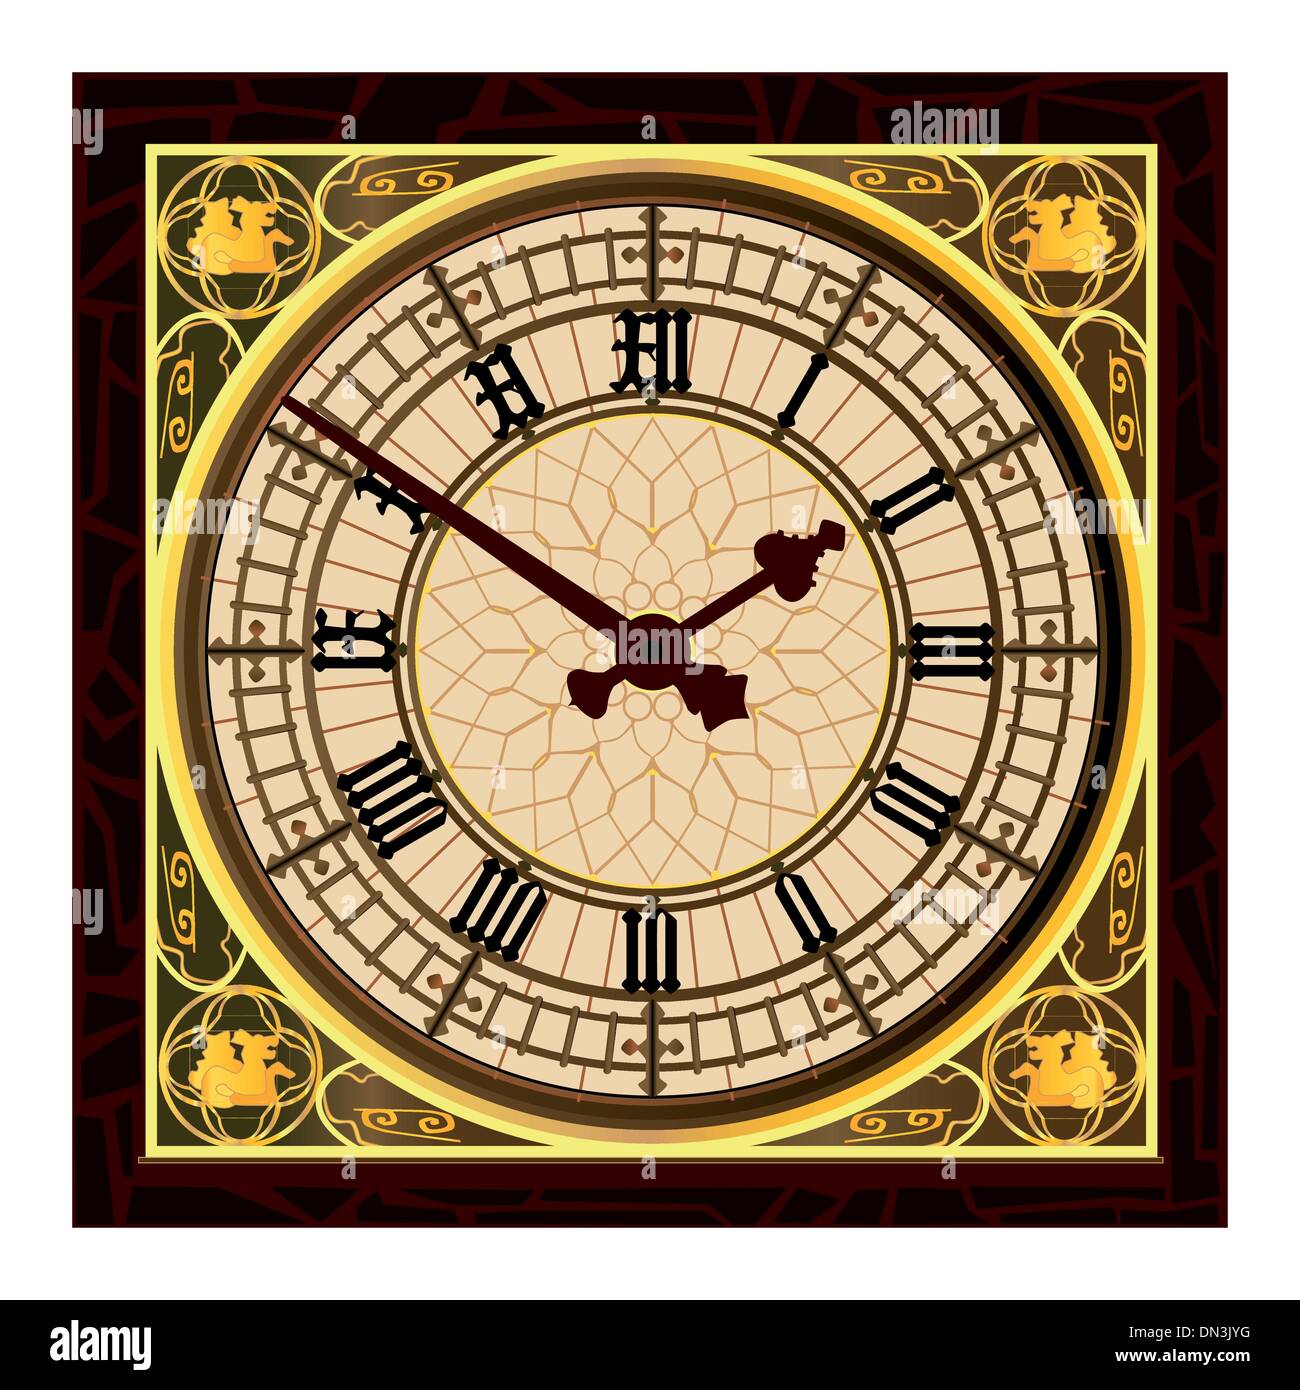 Figura de papelão com recorte em tamanho realista da Advanced Graphics -  Inglaterra, Big Ben Clock Tower, One Size, 1